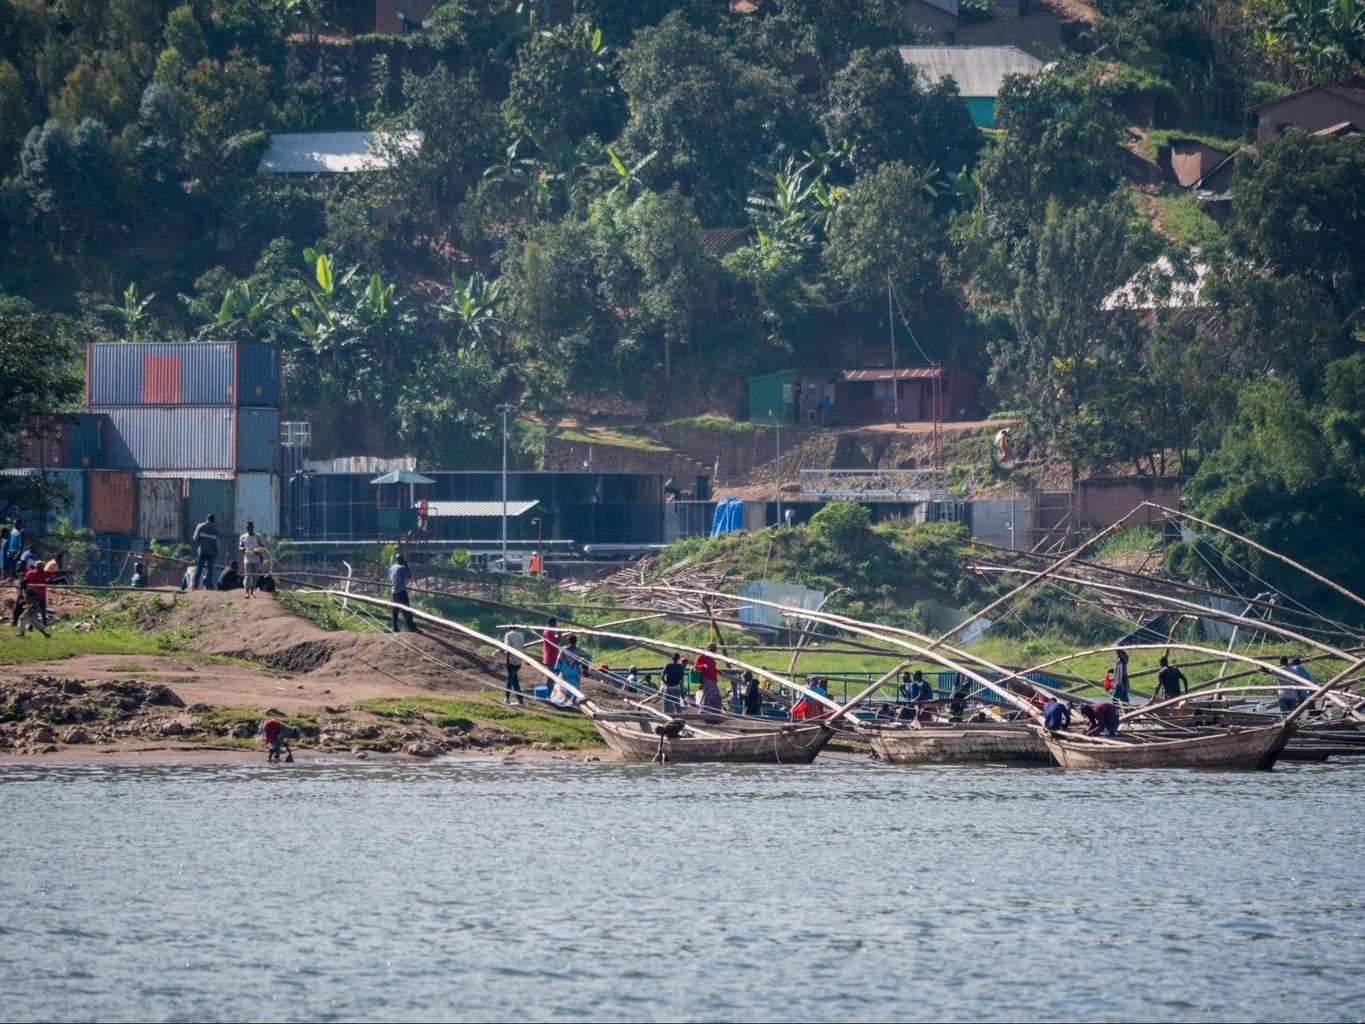 The famous fishermen of Lake Kivu